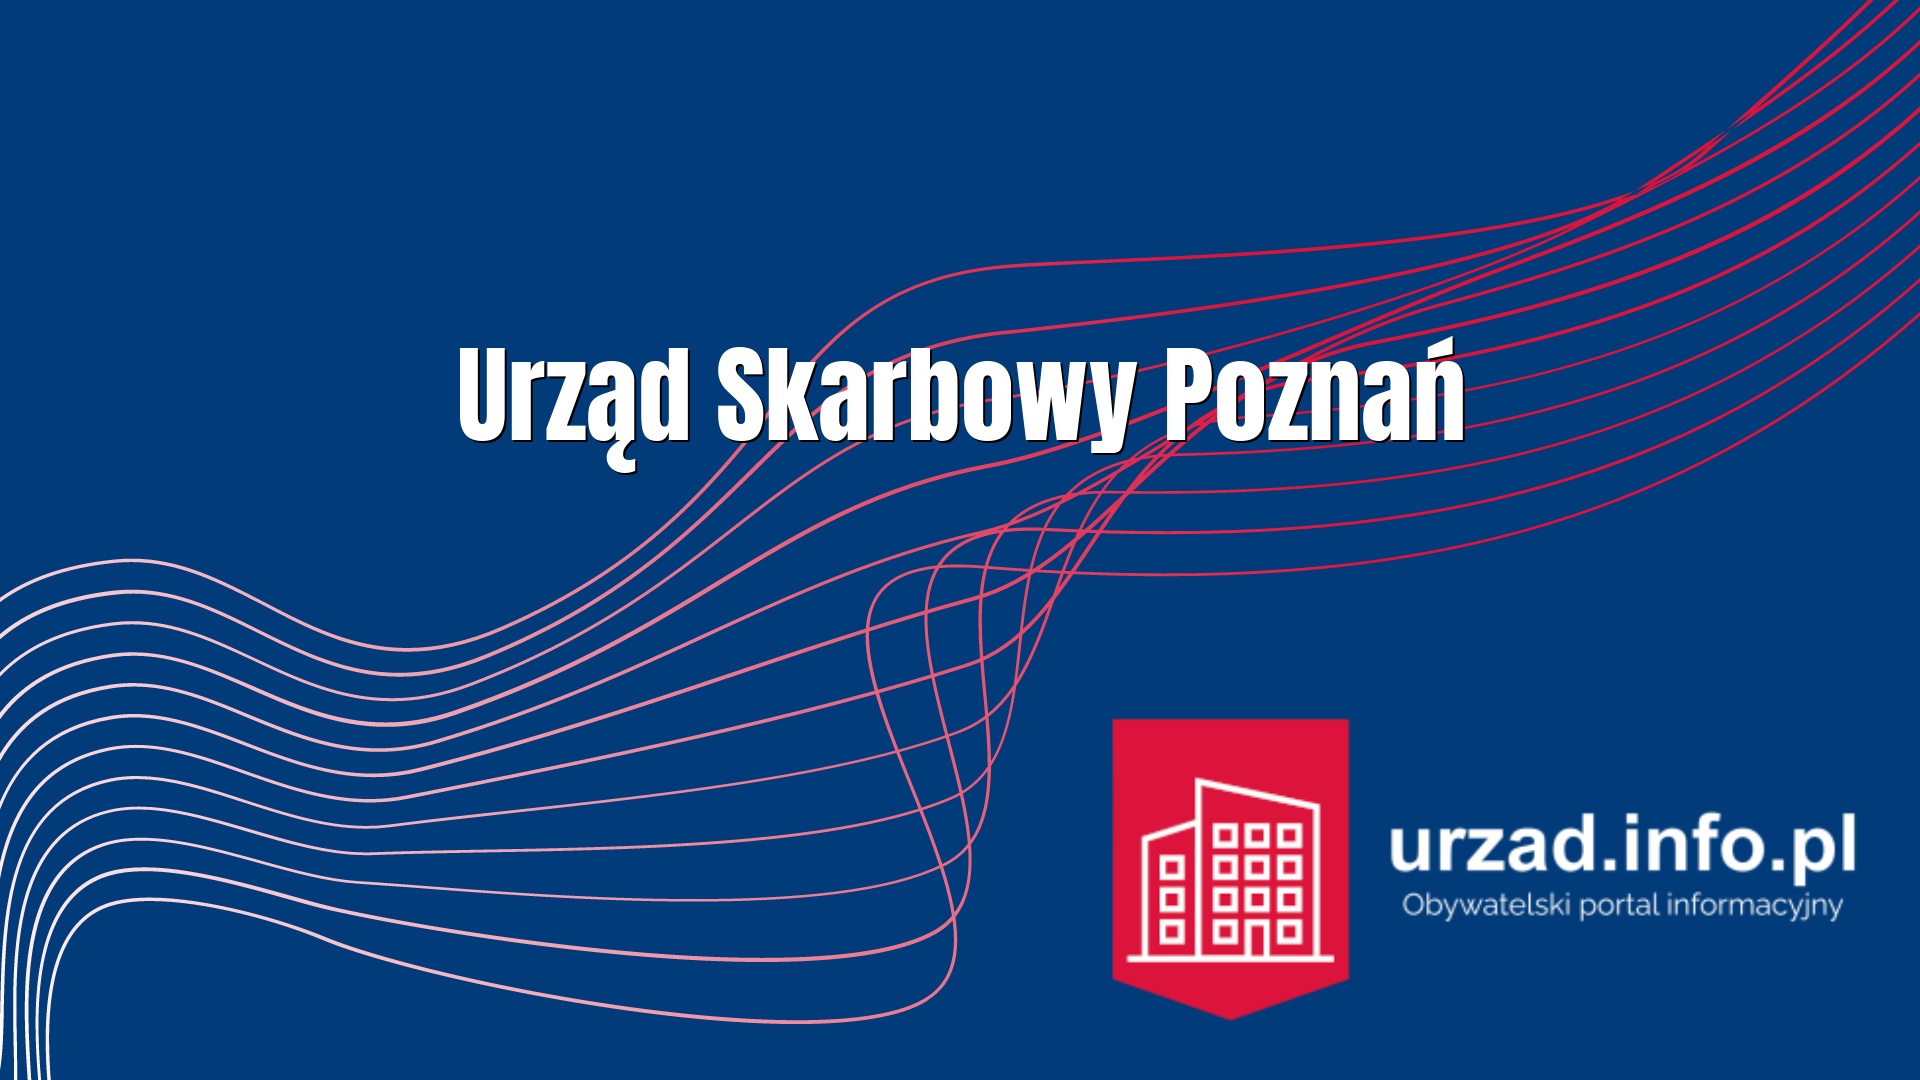 Urząd Skarbowy Poznań